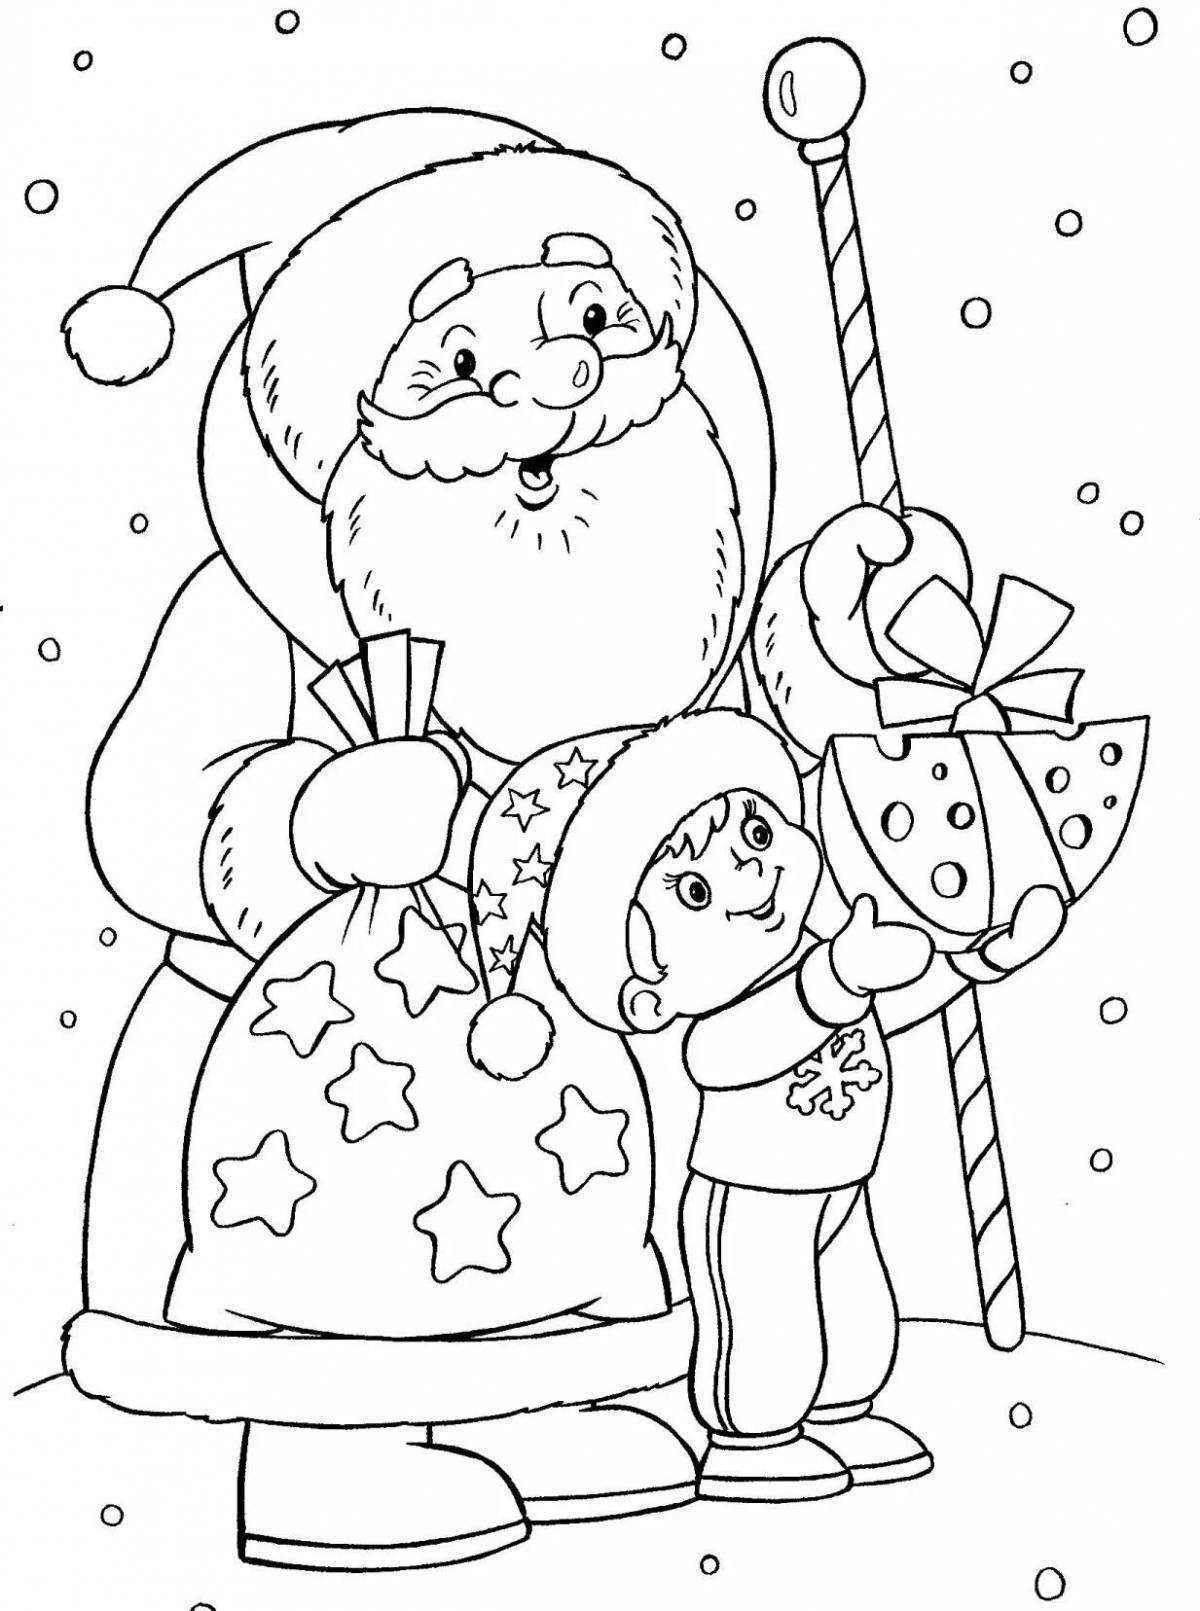 Whimsical Christmas drawing for kids